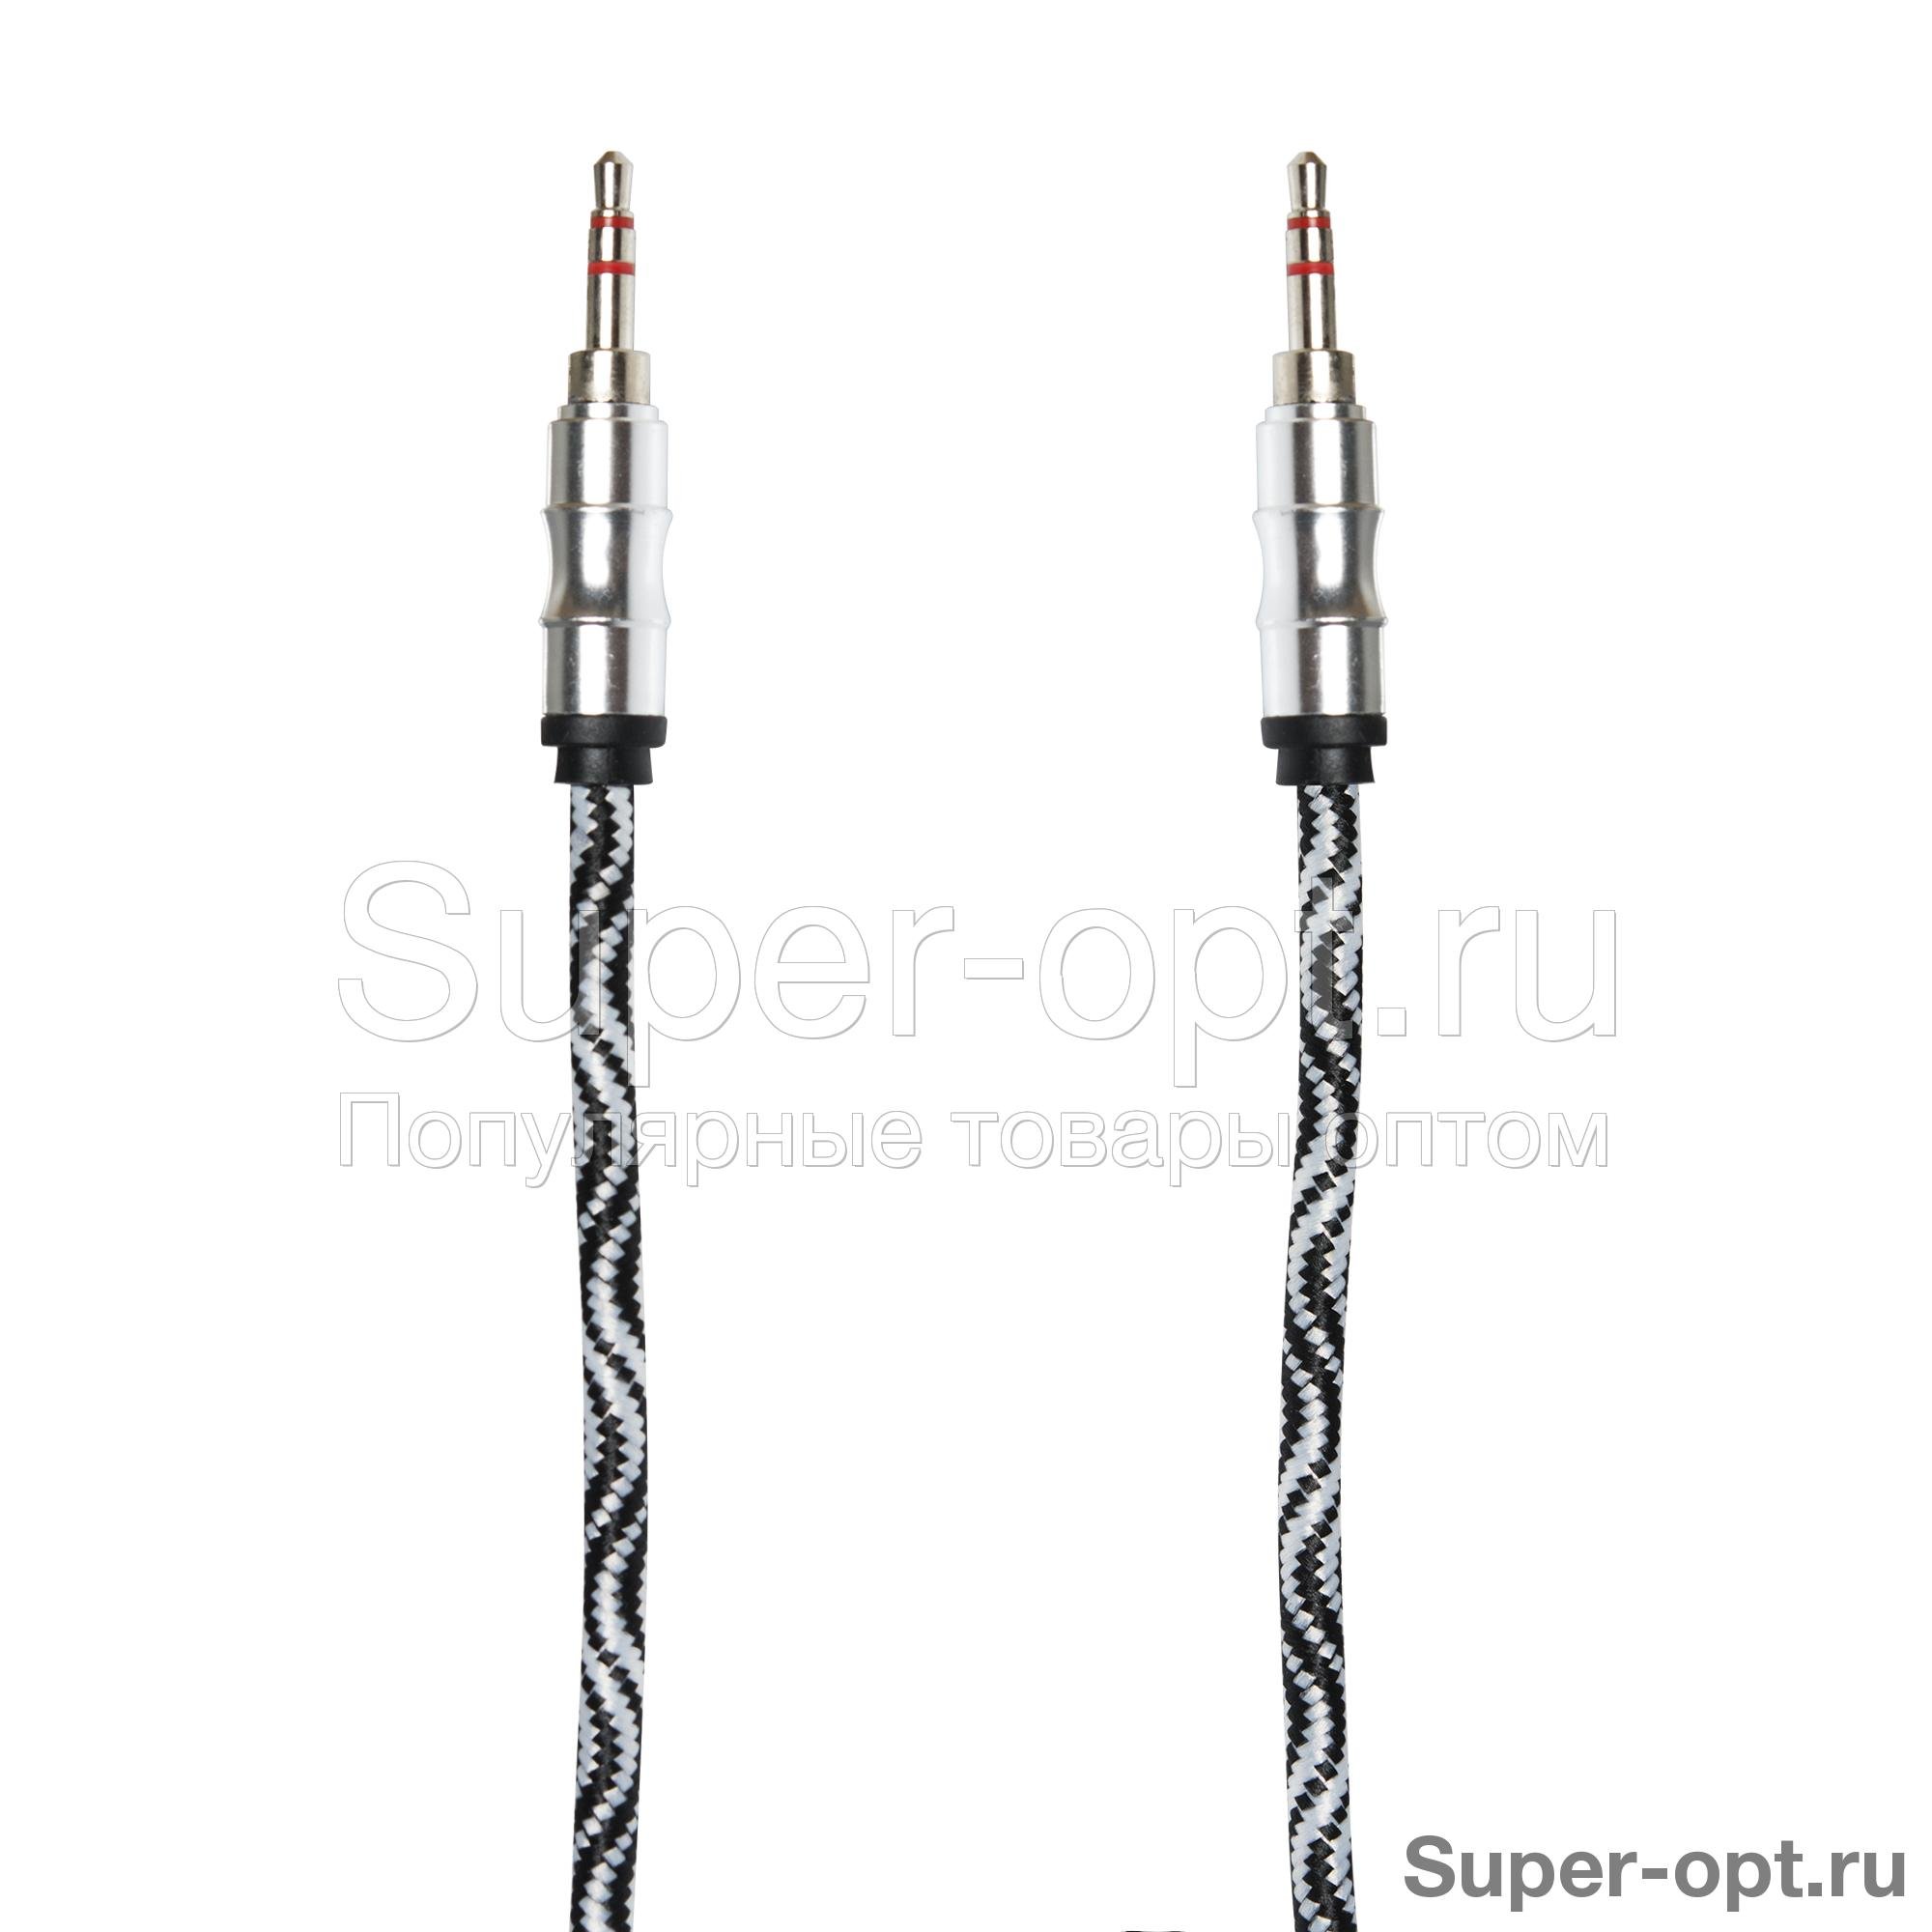 Аудио кабель AUX с оплеткой 3.5 мм